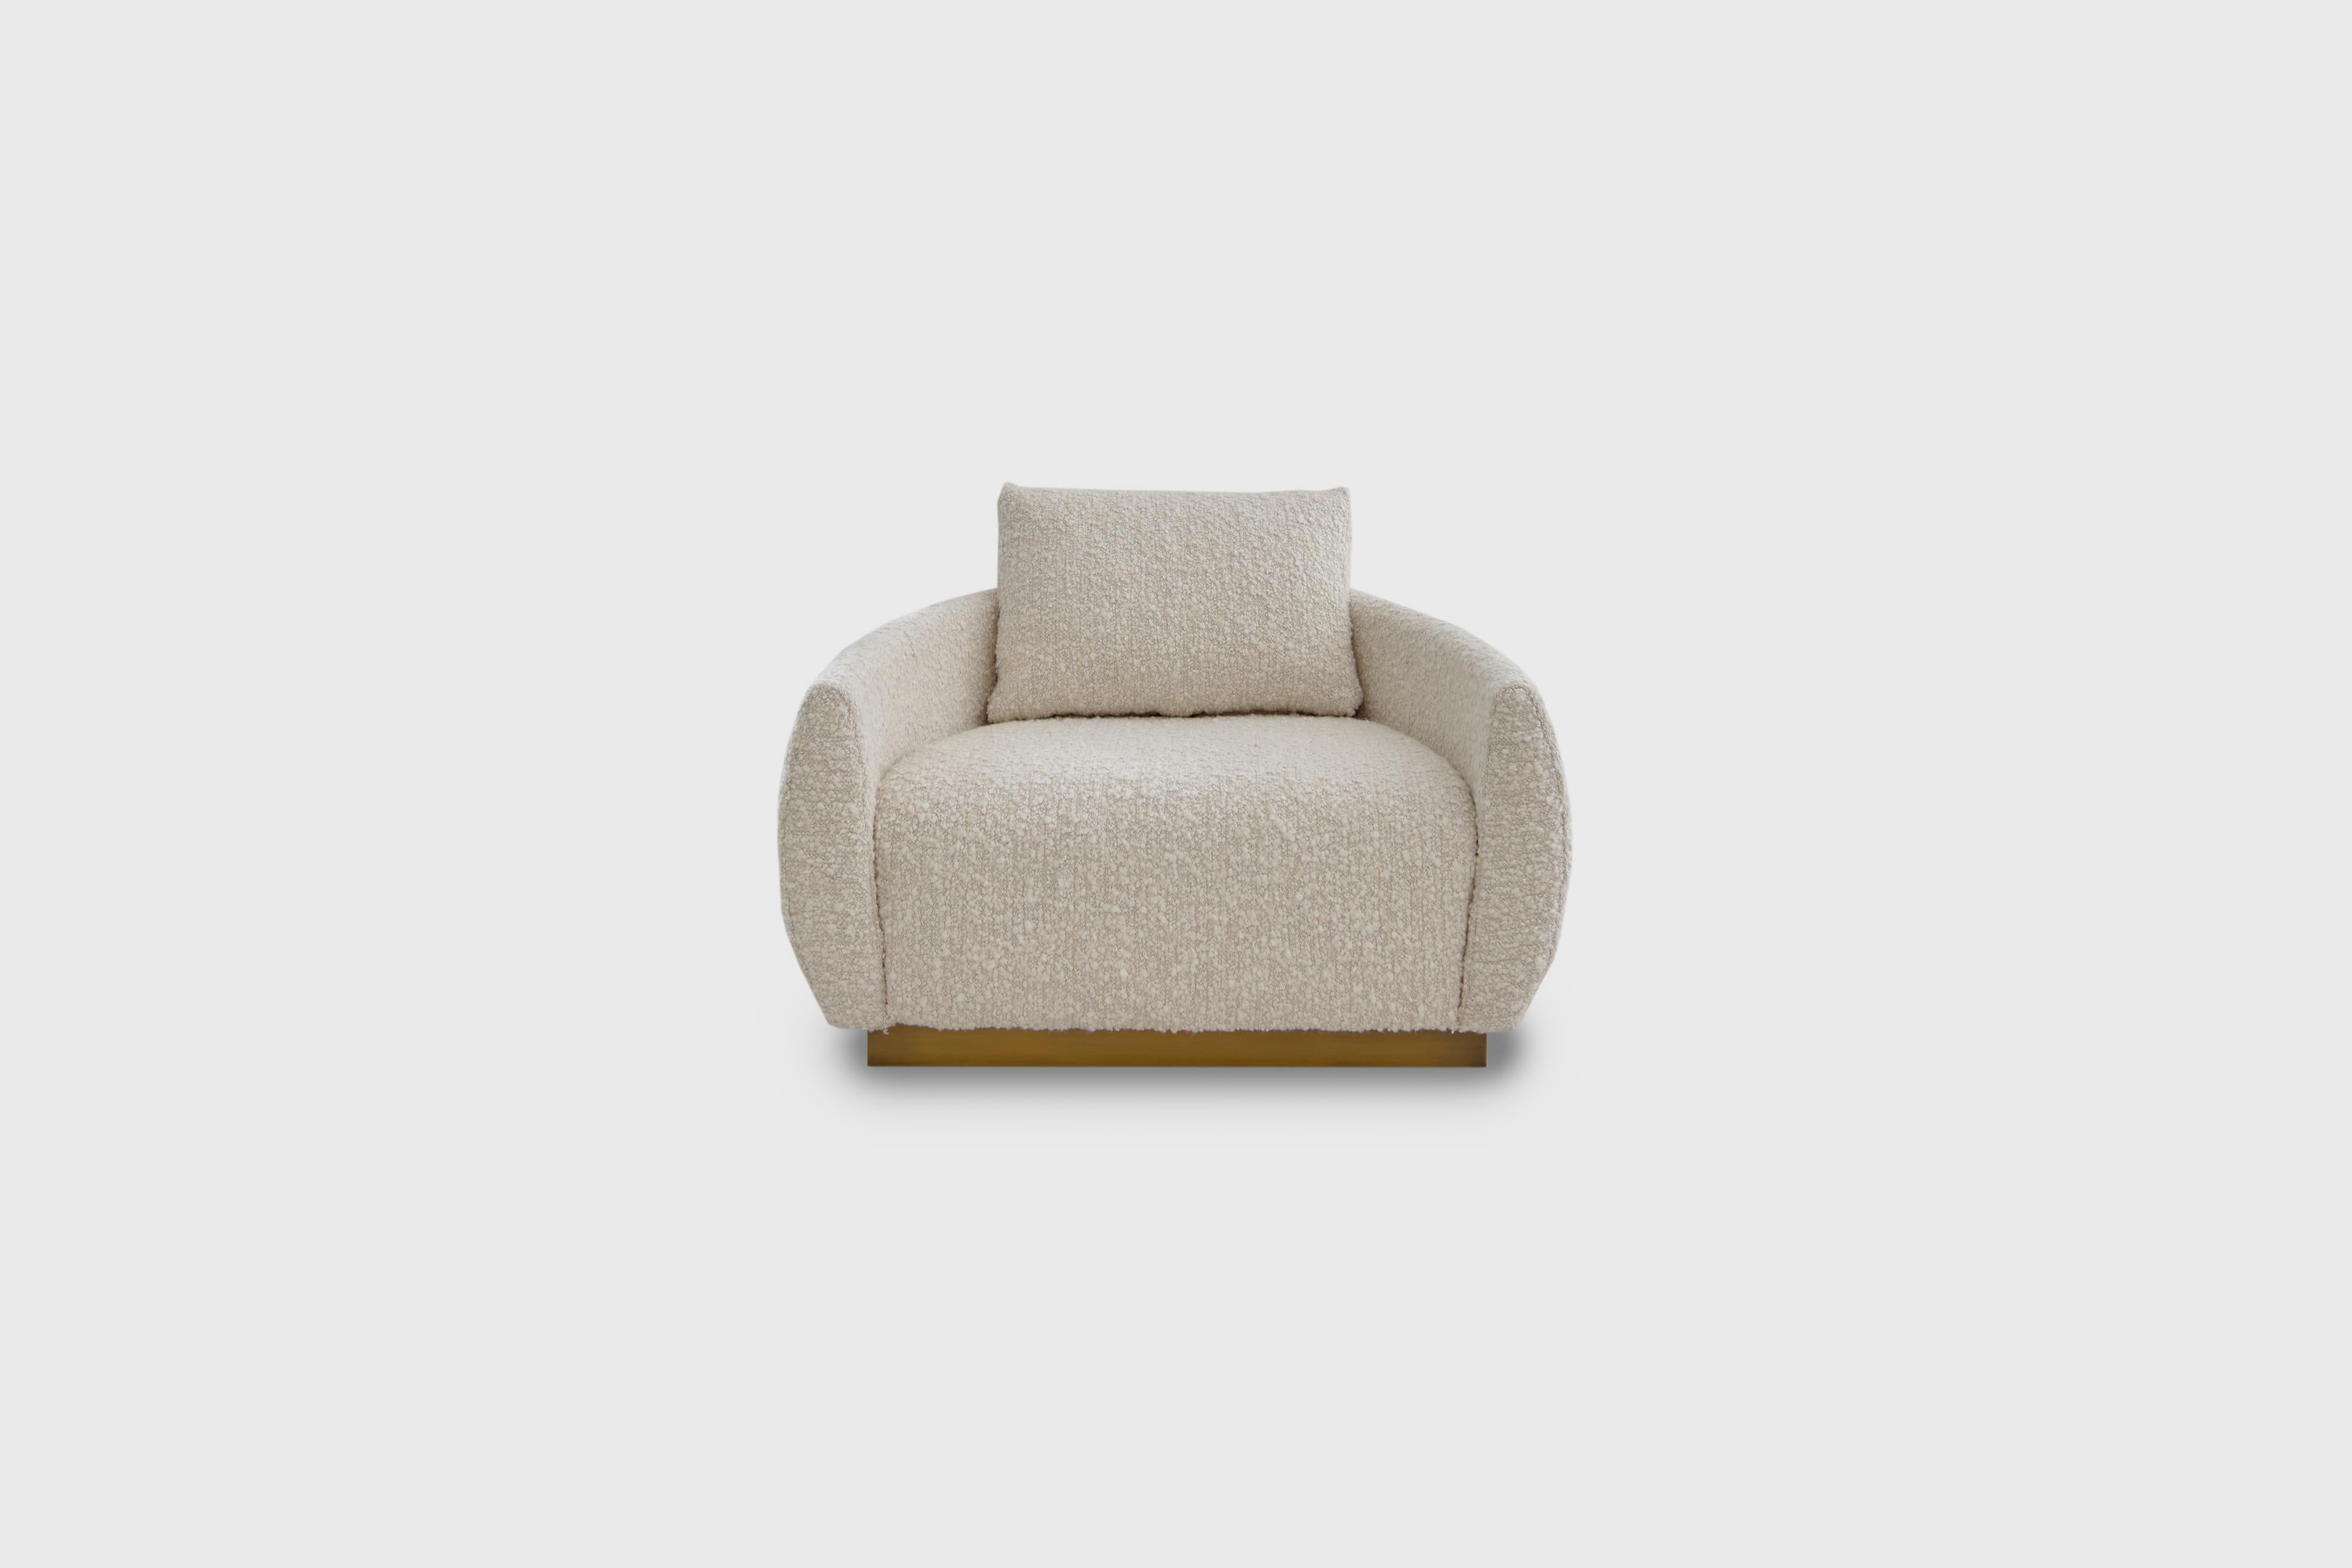 Egge lounge chair von Atra Design
Abmessungen: T 83,9 x B 105,6 x H 62,9 cm
MATERIALIEN: Boulé-Stoff Elitis Horizon, Messing.

Atra Design
Wir sind Atra, eine Möbelmarke, die von Atra form A, einer in Mexiko-Stadt ansässigen